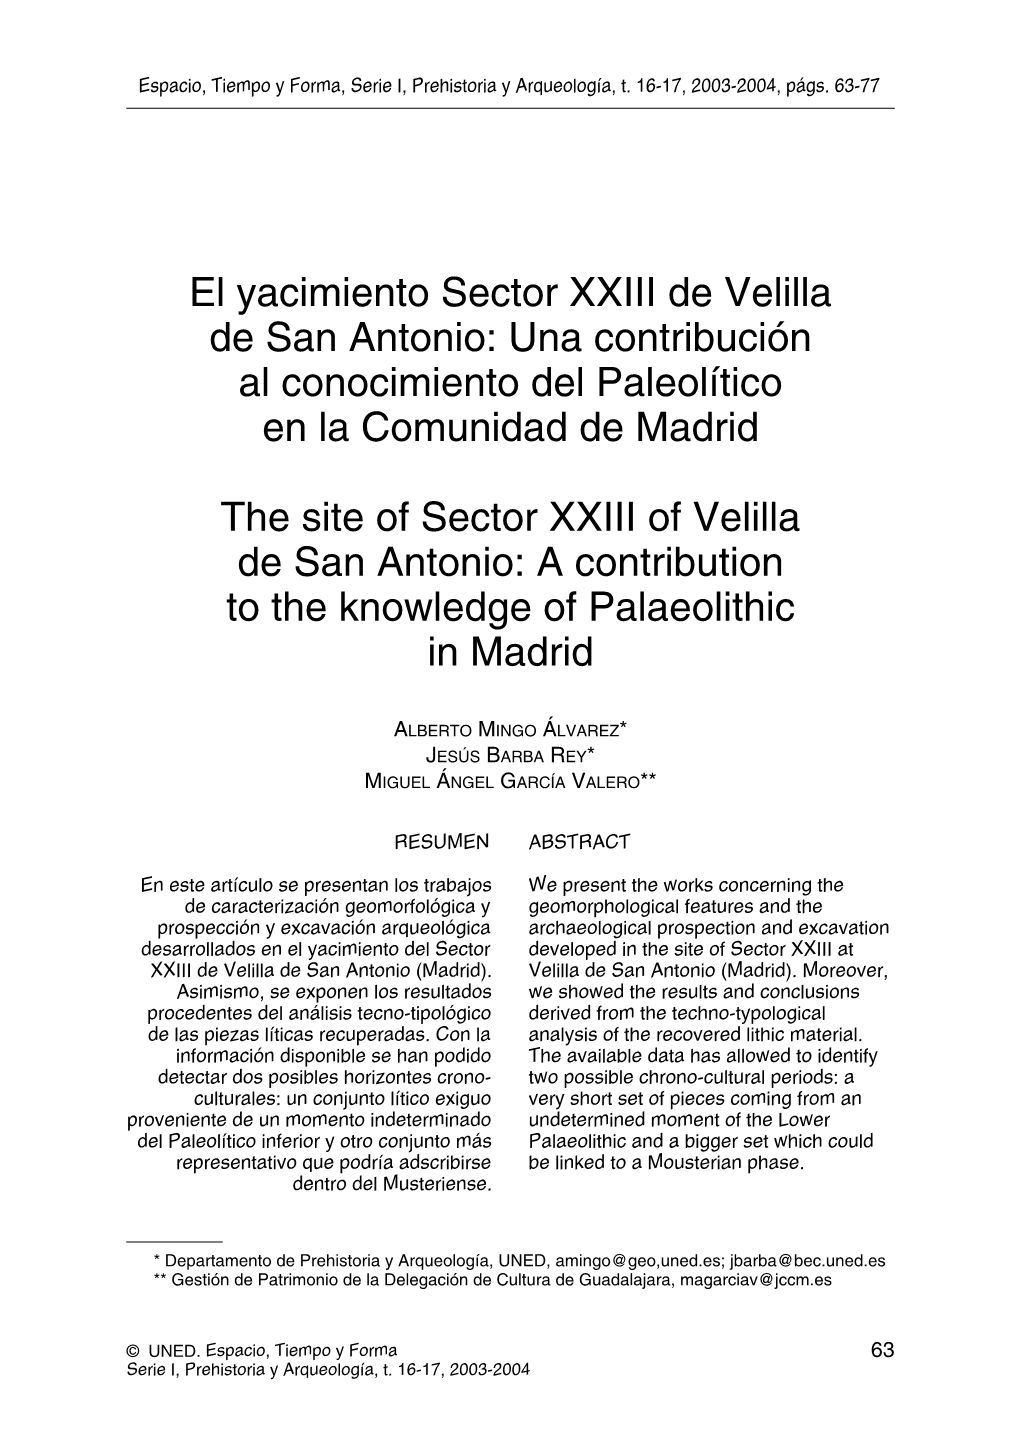 El Yacimiento Sector XXIII De Velilla De San Antonio: Una Contribución Al Conocimiento Del Paleolítico En La Comunidad De Madrid